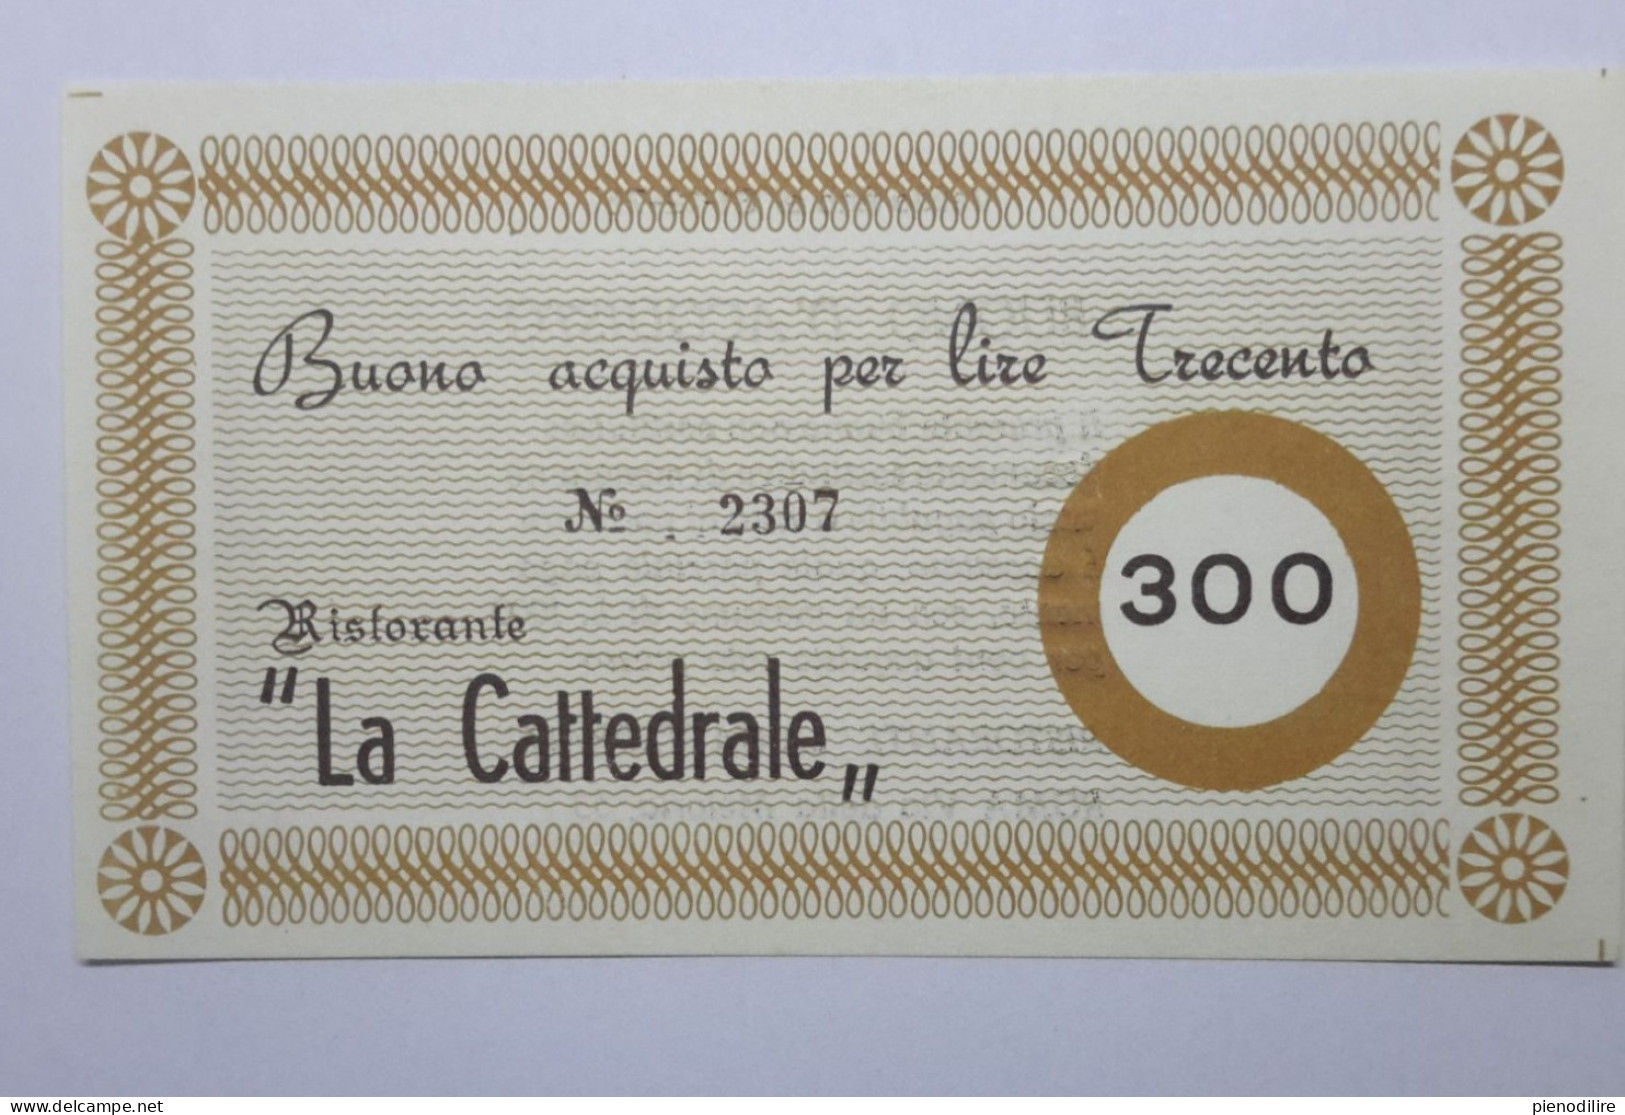 LOTTO 4Pz. 100 200 300 400 LIRE BUONI ACQUISTO RISTORANTE LA CATTEDRALE ROMA VALIDO FINO AL 31.12.1976 (A.4) - [10] Chèques